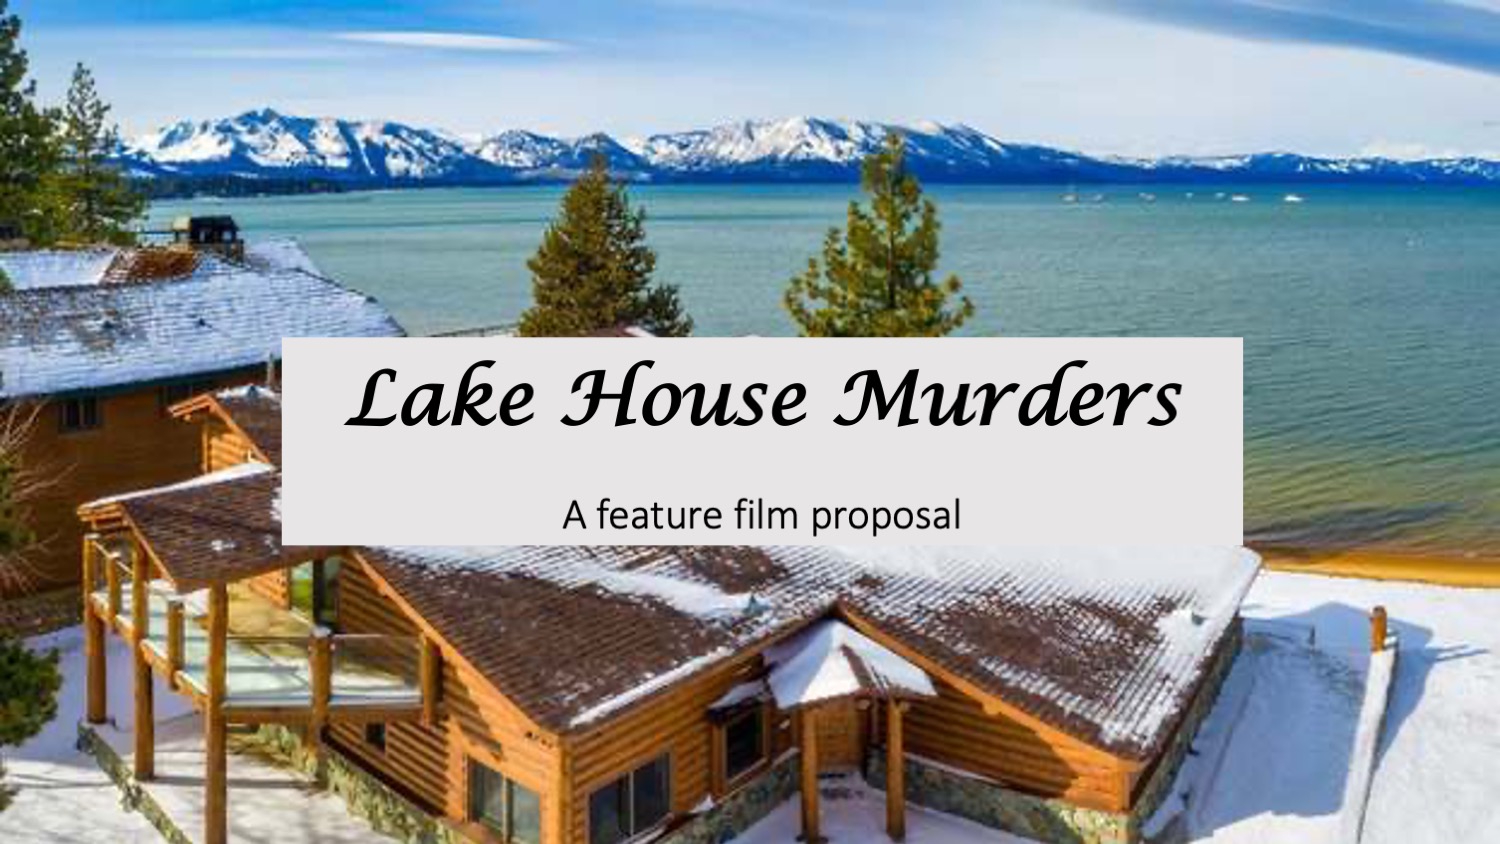 LAKE HOUSE MURDERS